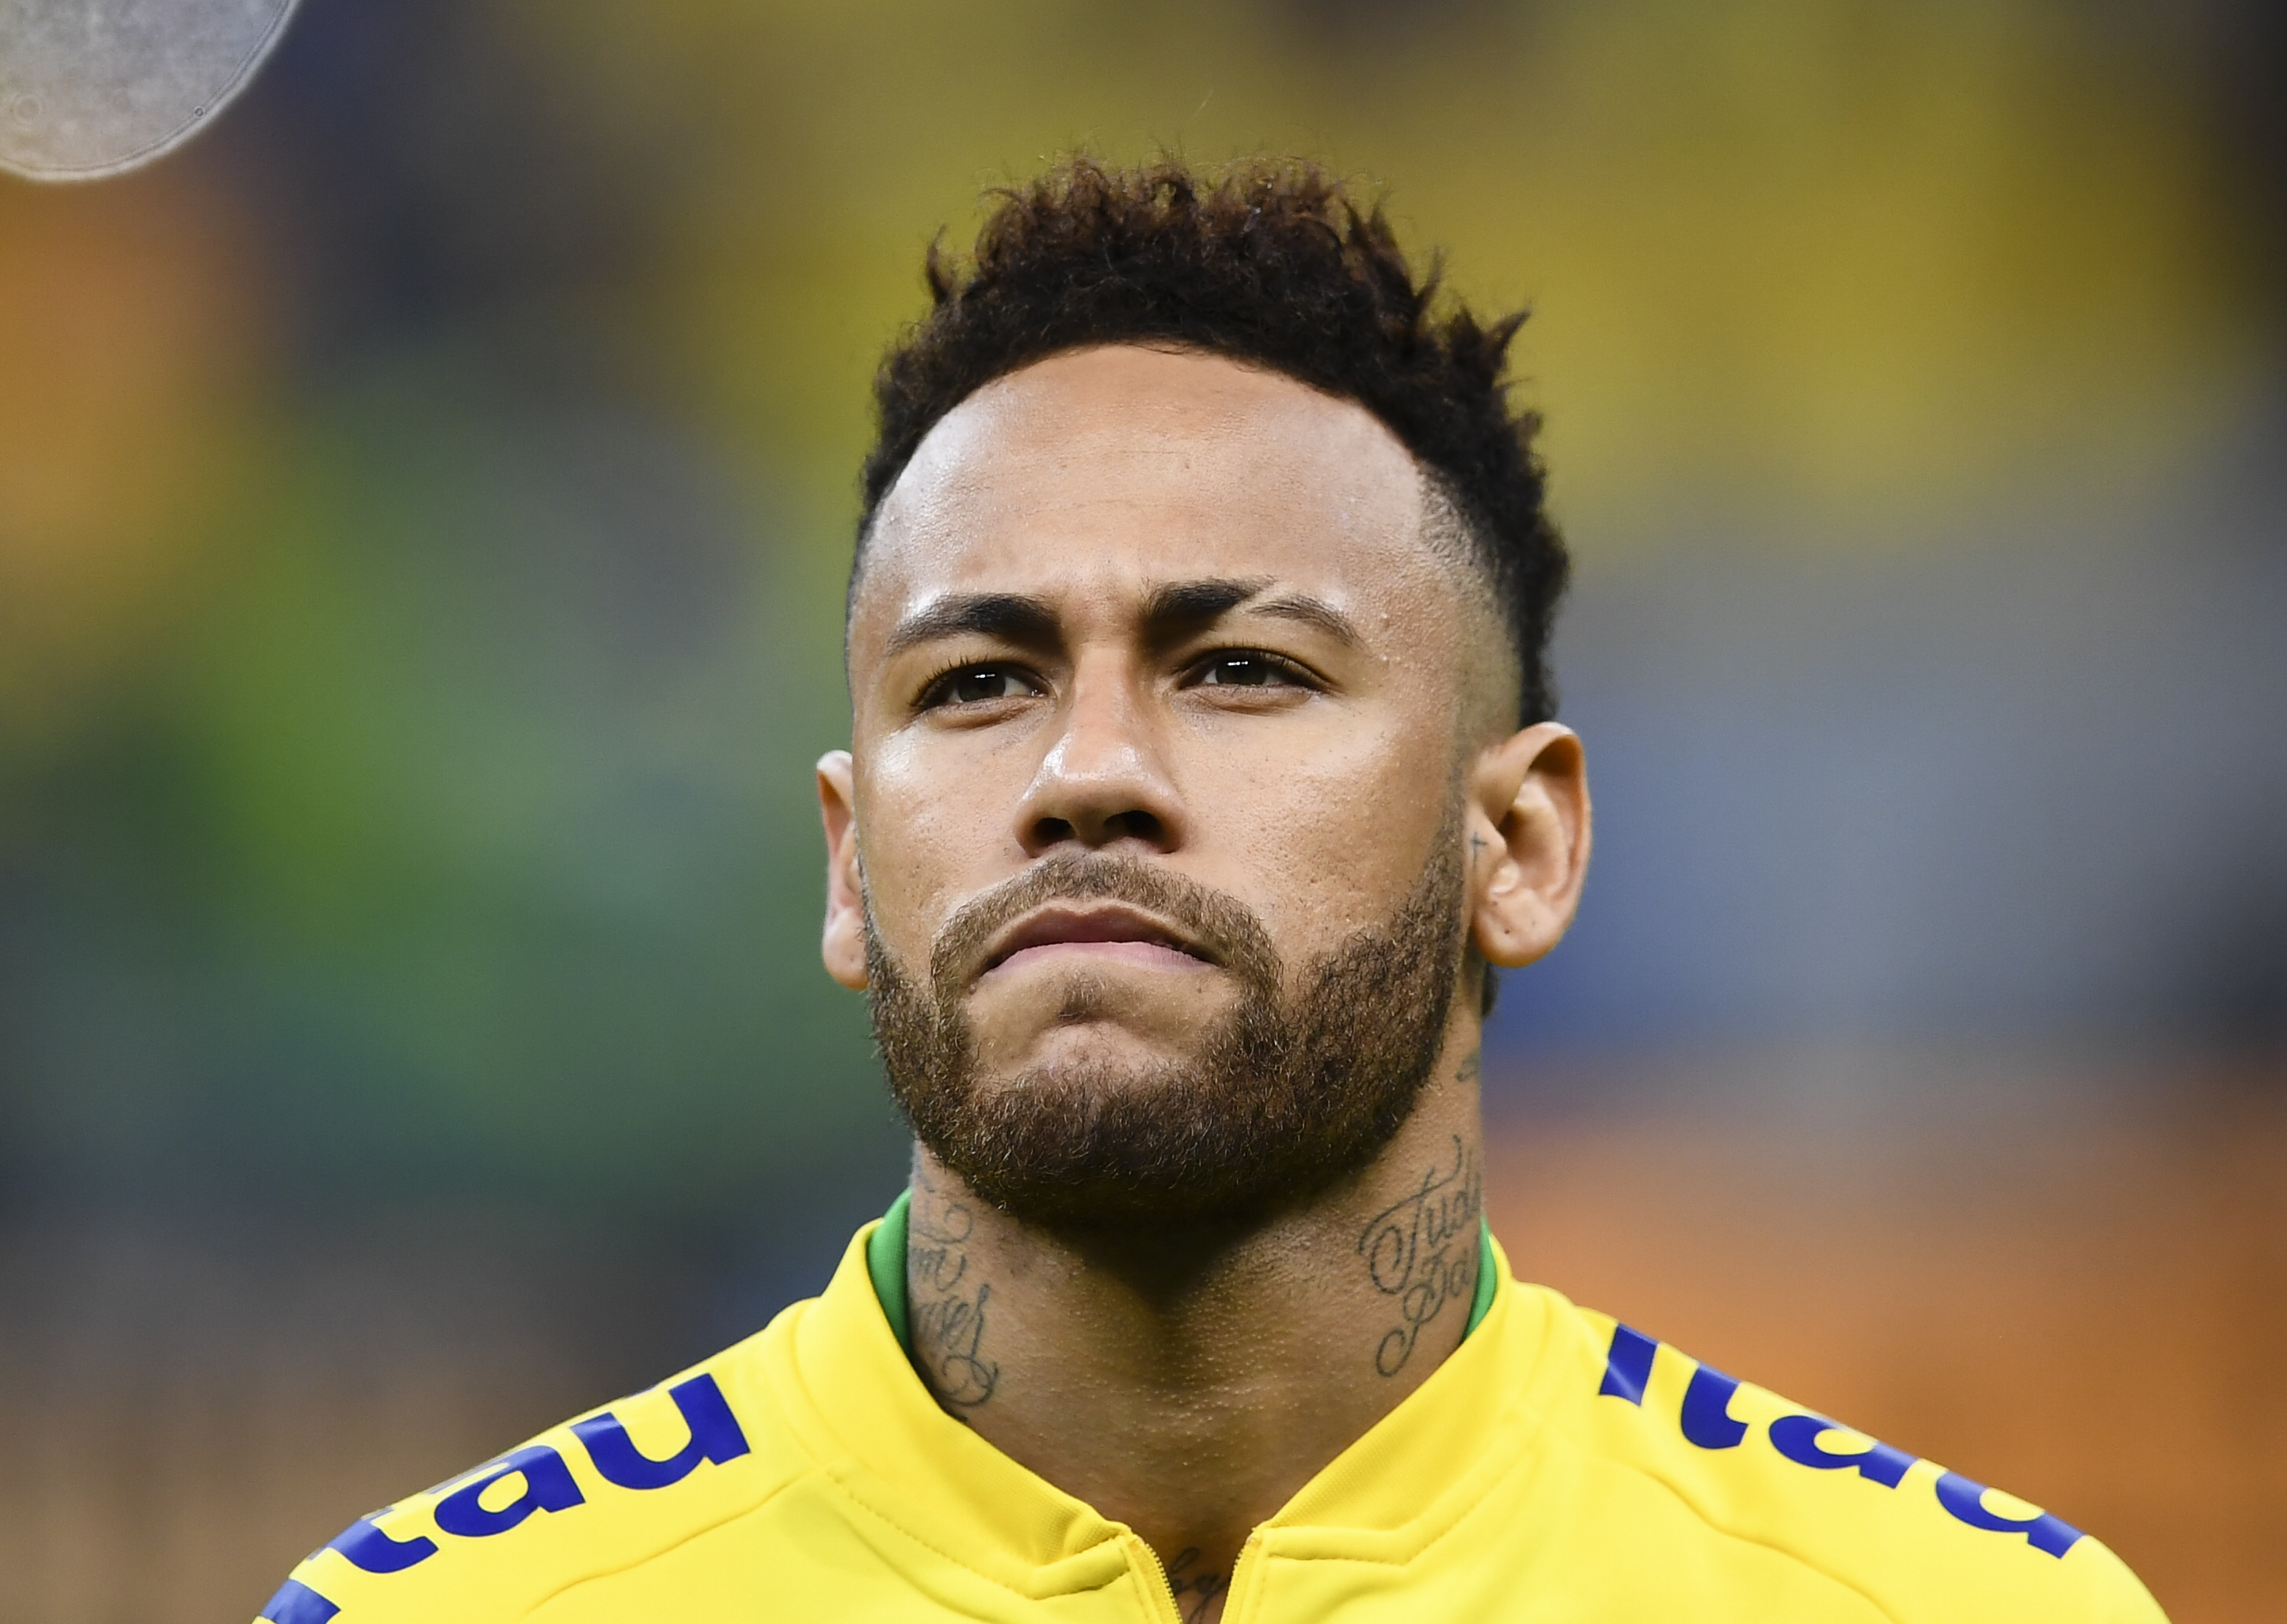 El escandaloso audio de Neymar sobre el novio de su madre que le generó una denuncia por homofobia